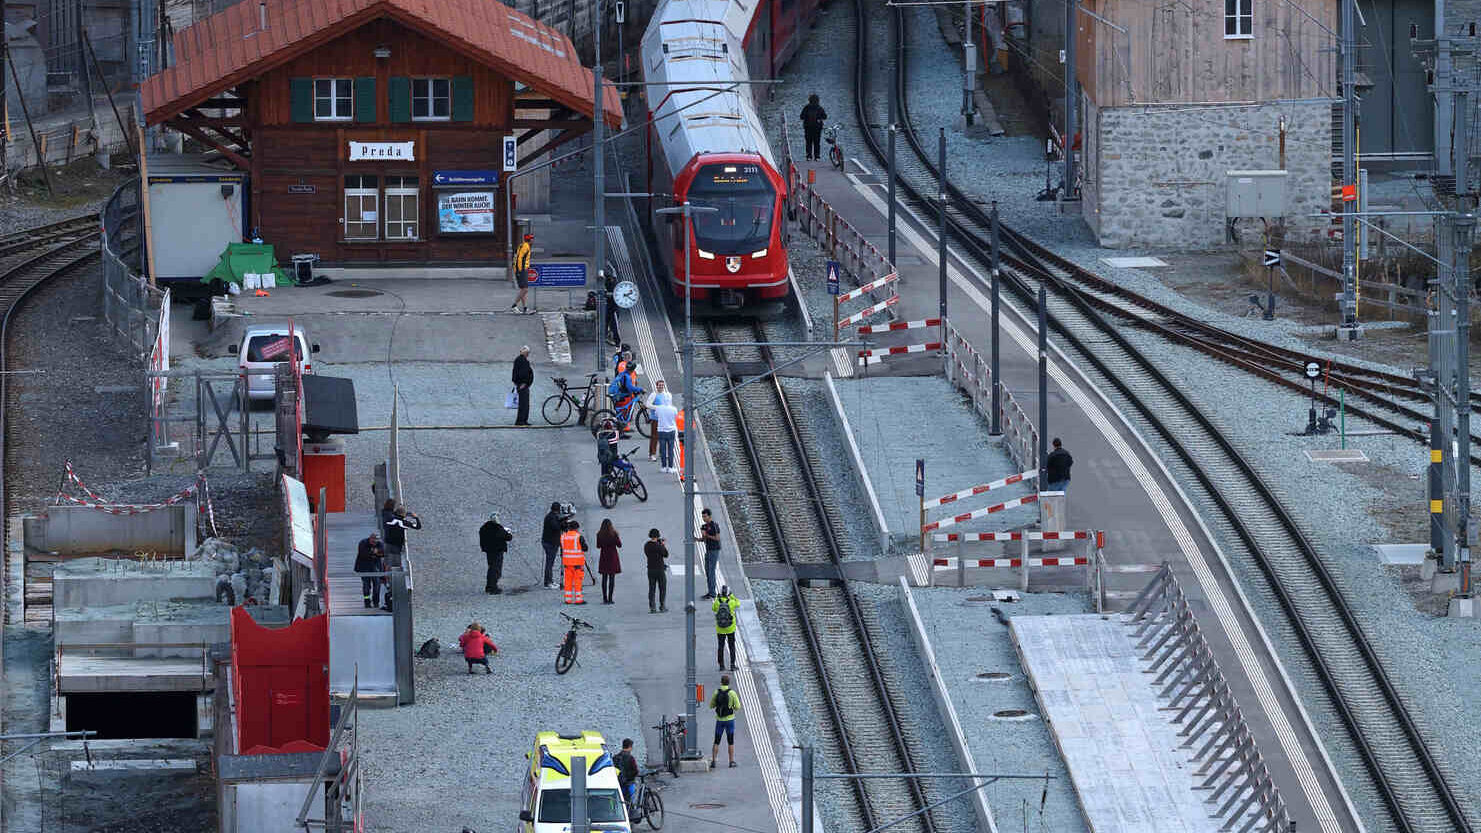 O trem de bitola estreita mais longo do mundo na linha Albula da Rhaetian Railway na Suíça em 29 de outubro de 2022 (Foto: Andy Mettler/Swiss-Image)